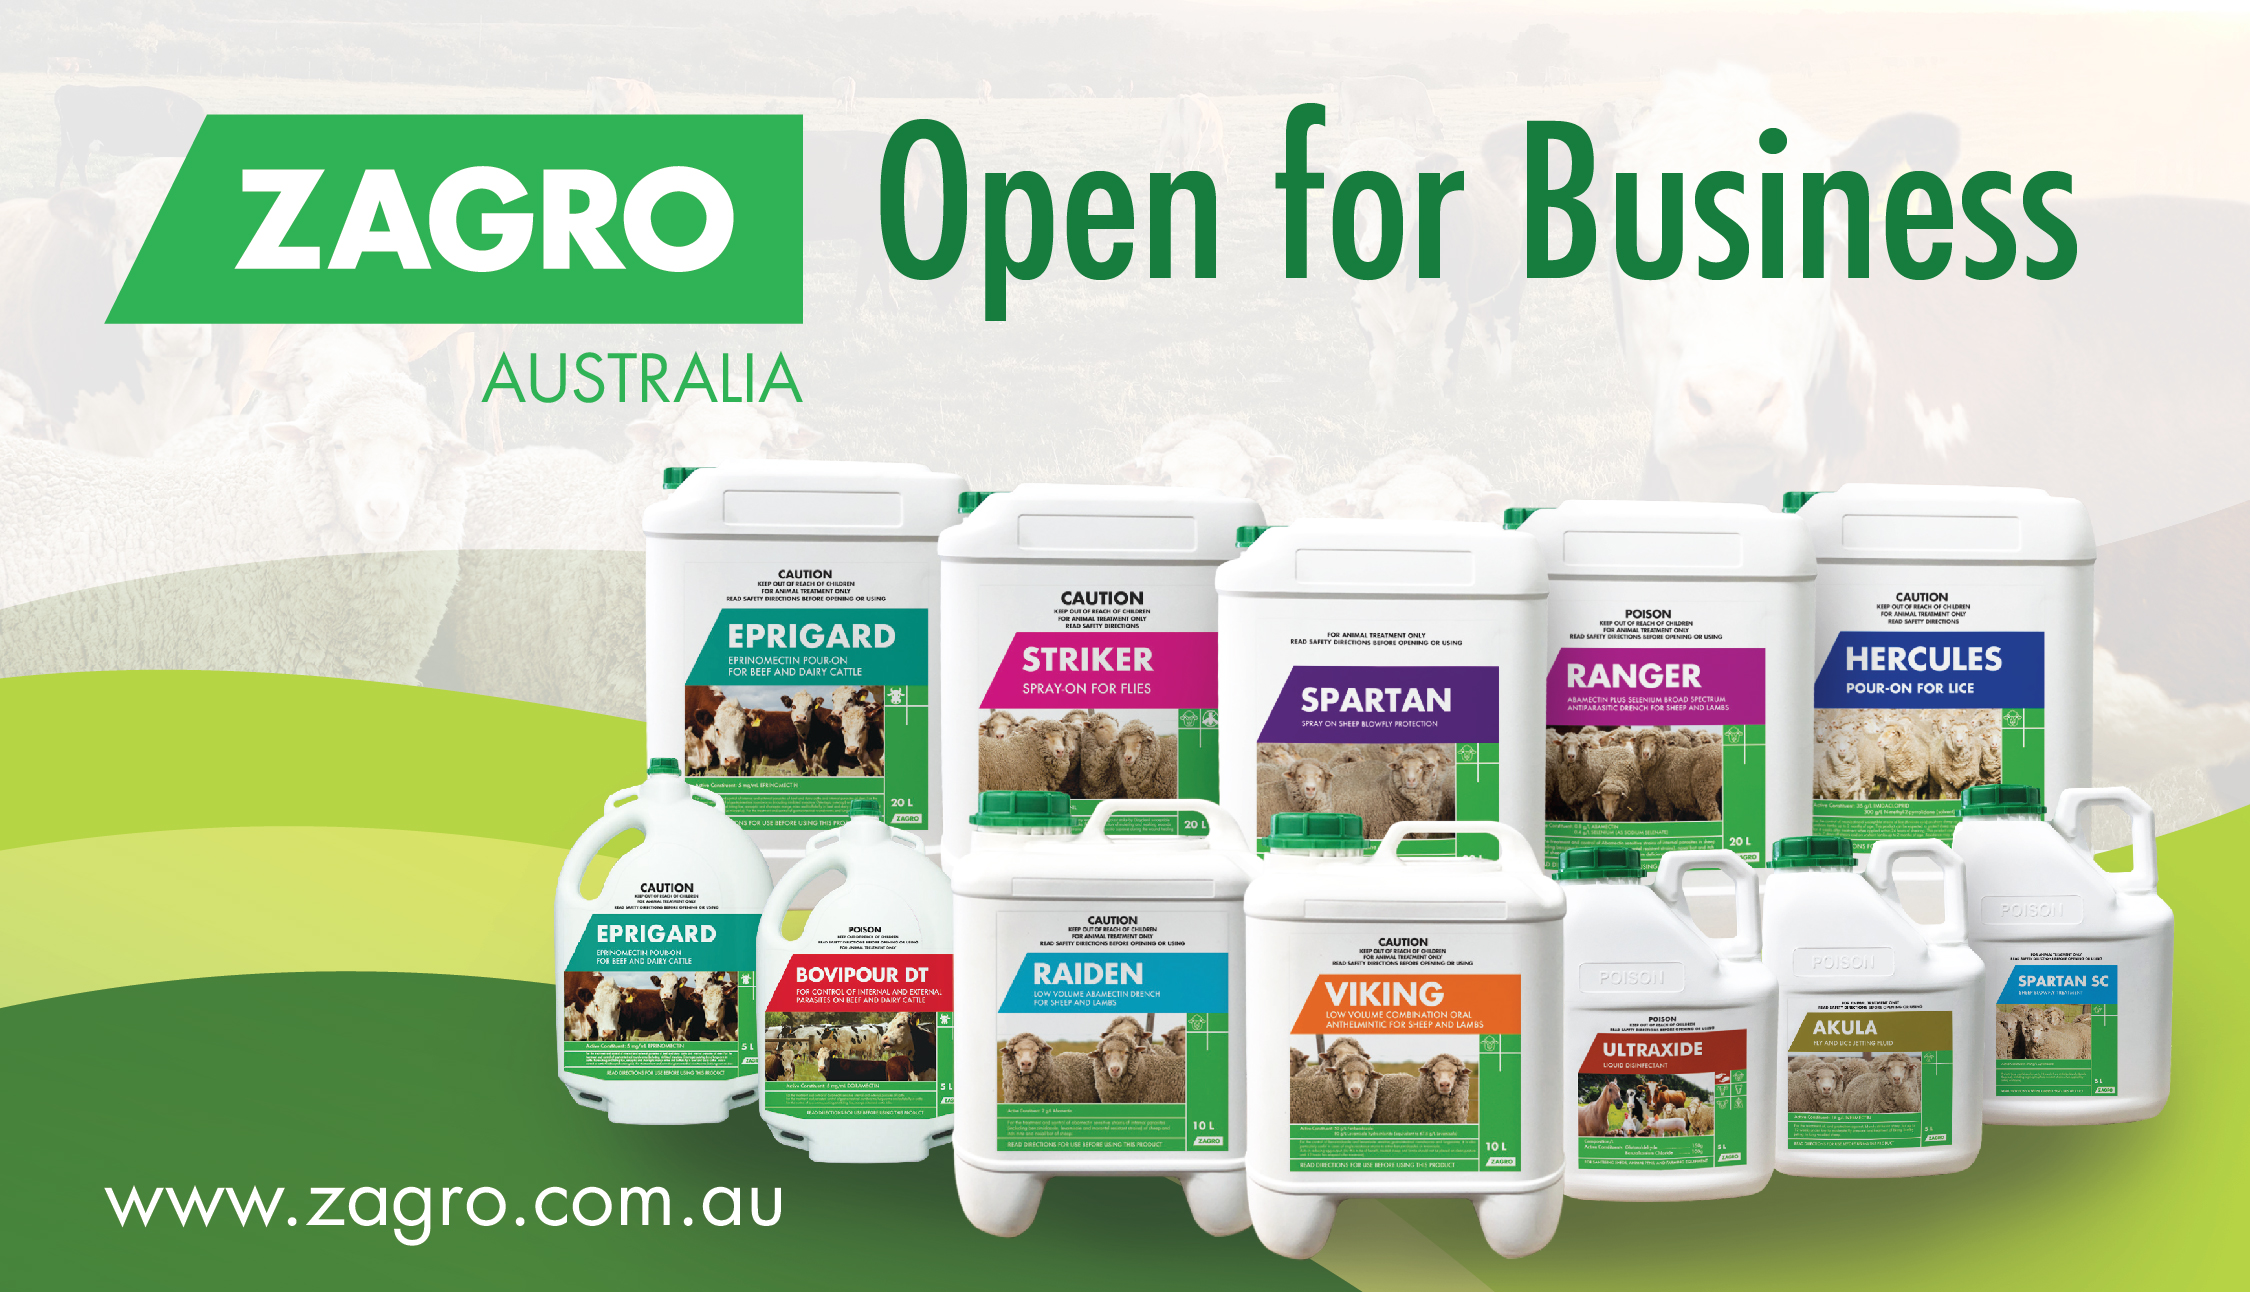 Zagro Australia is Open for Business